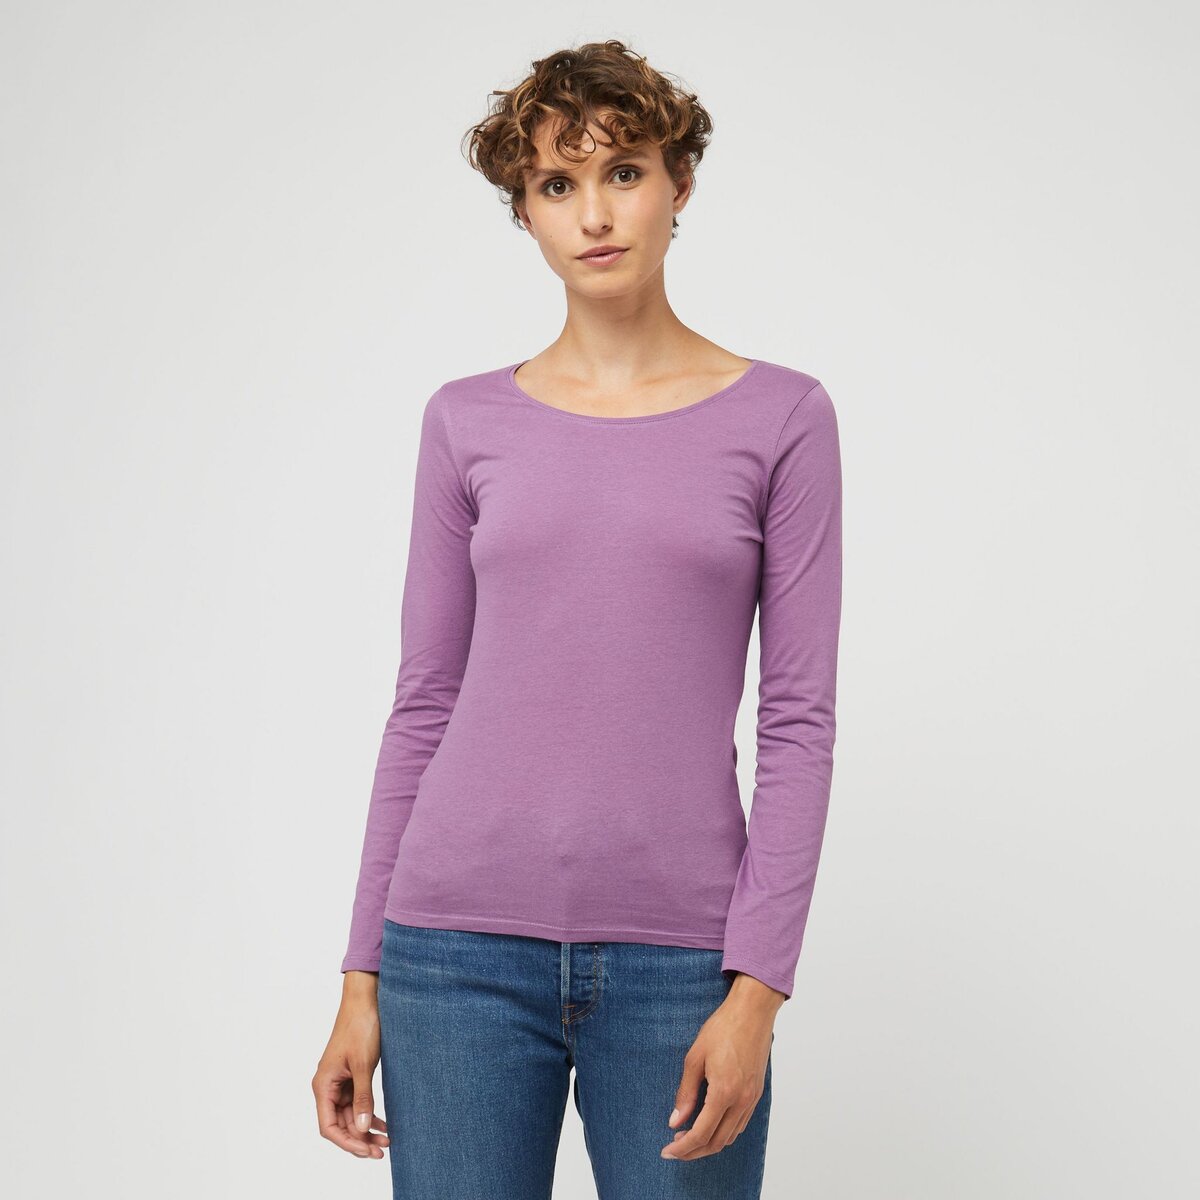 INEXTENSO T-shirt manches longues violet en coton femme